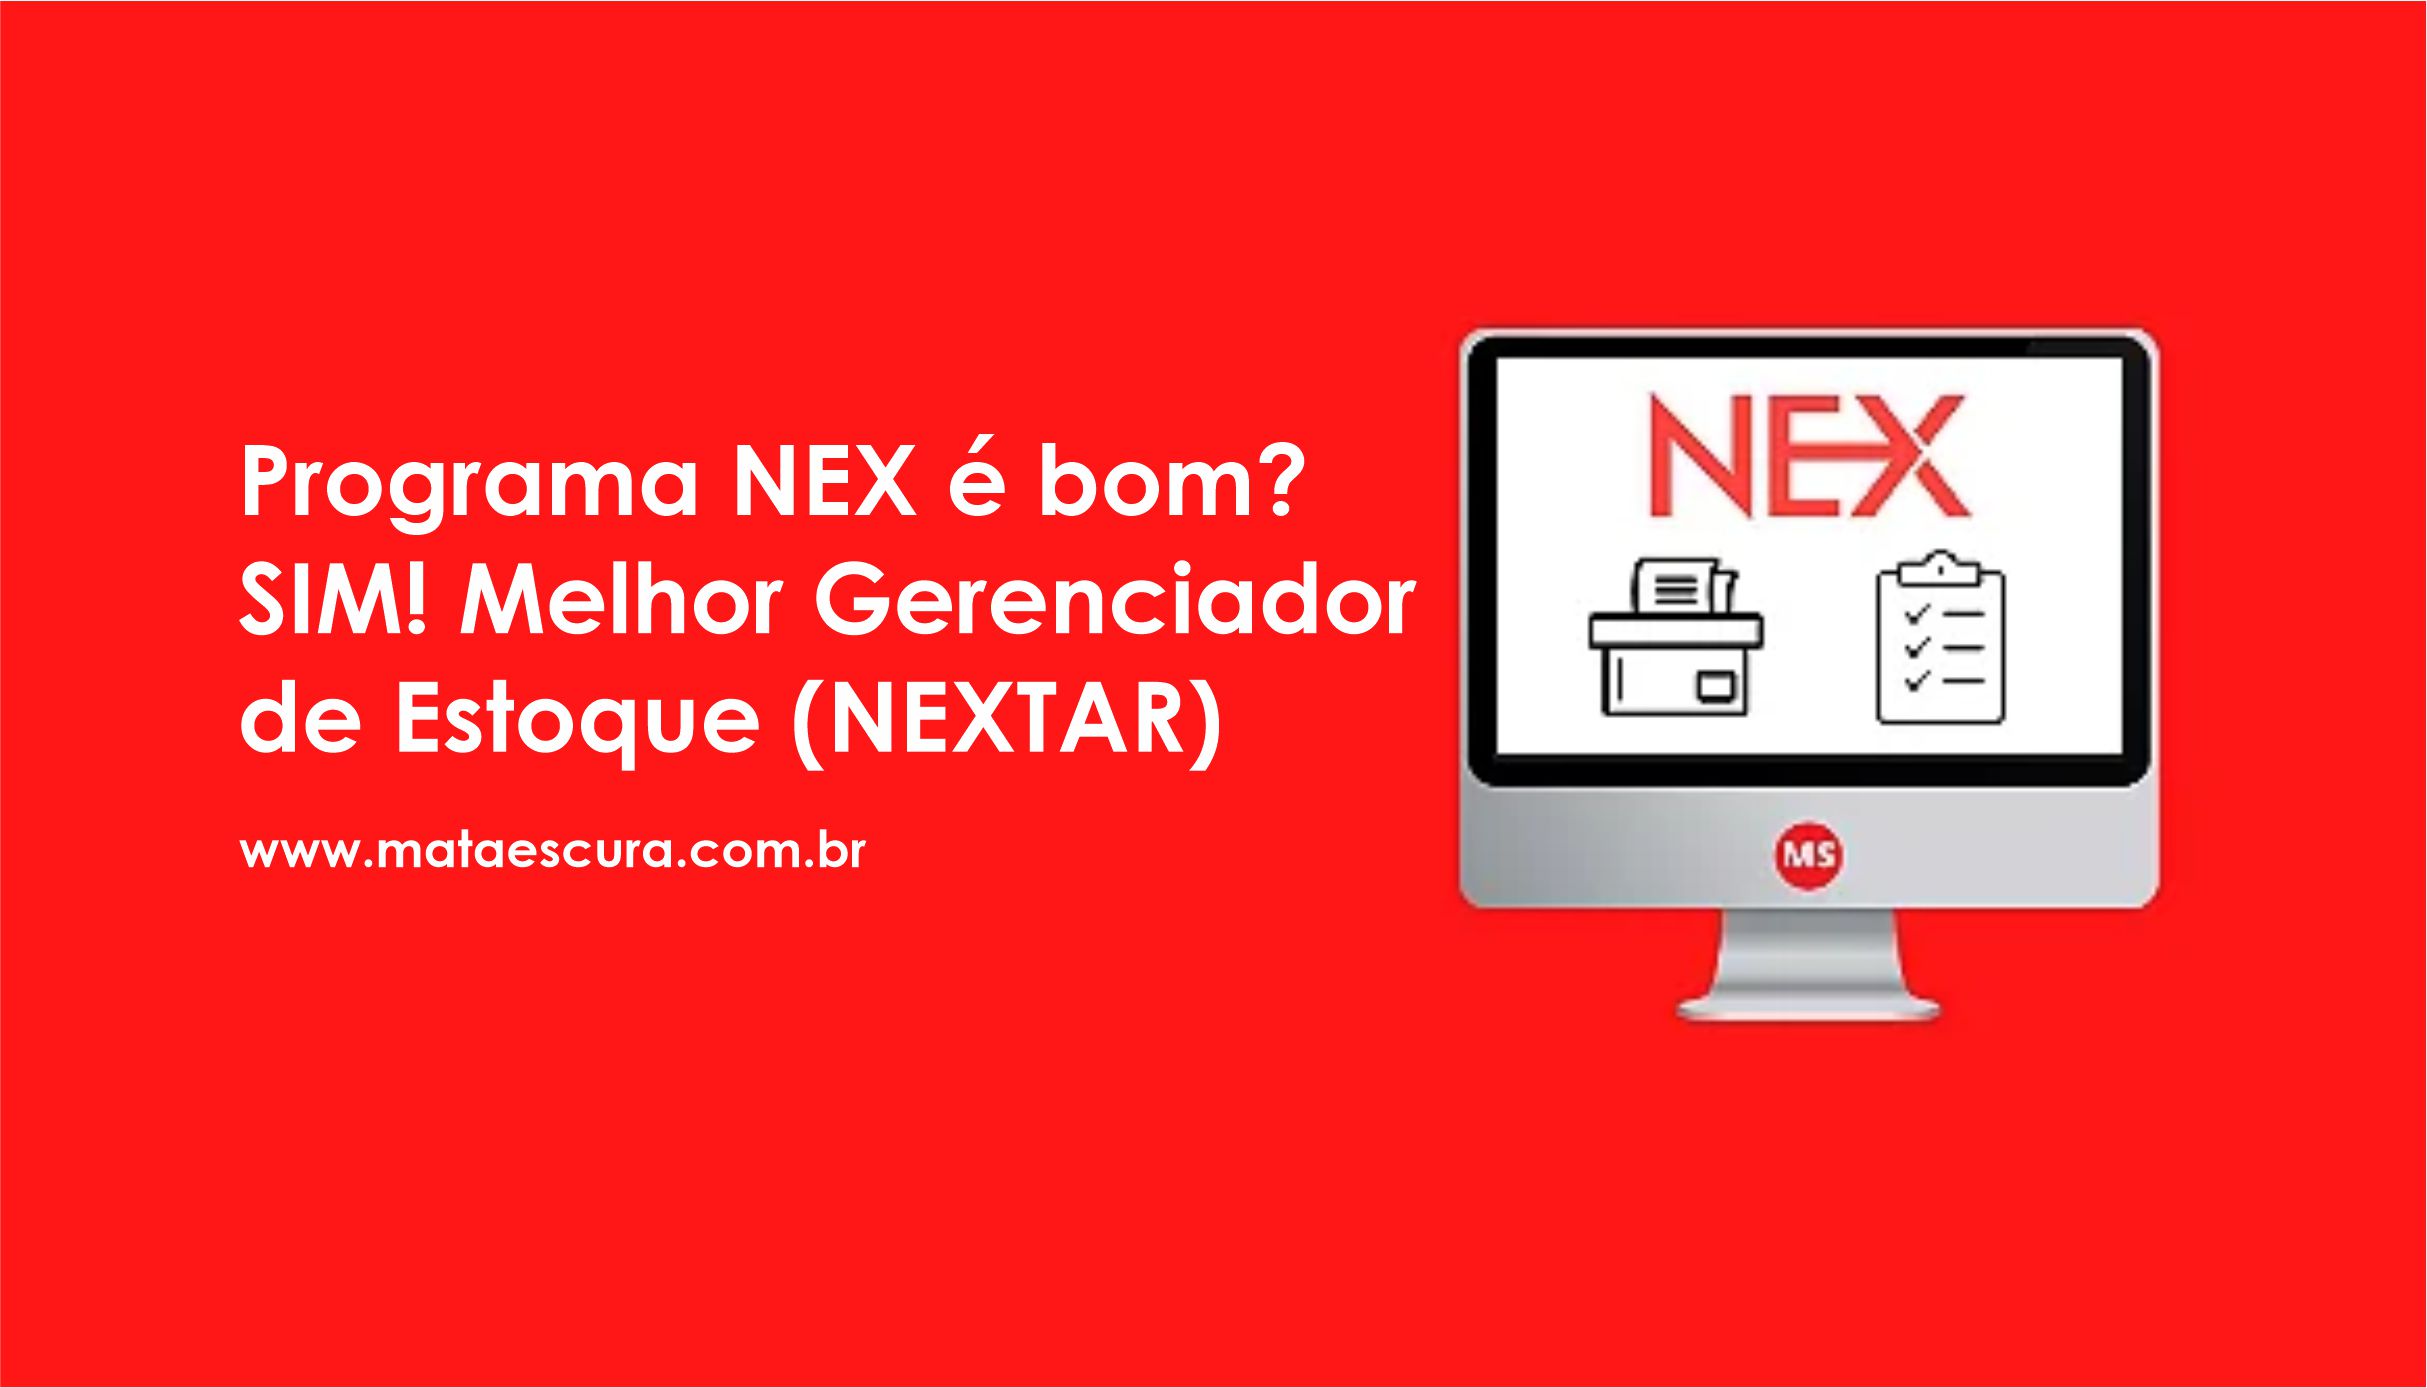 Nex Saúde – Software